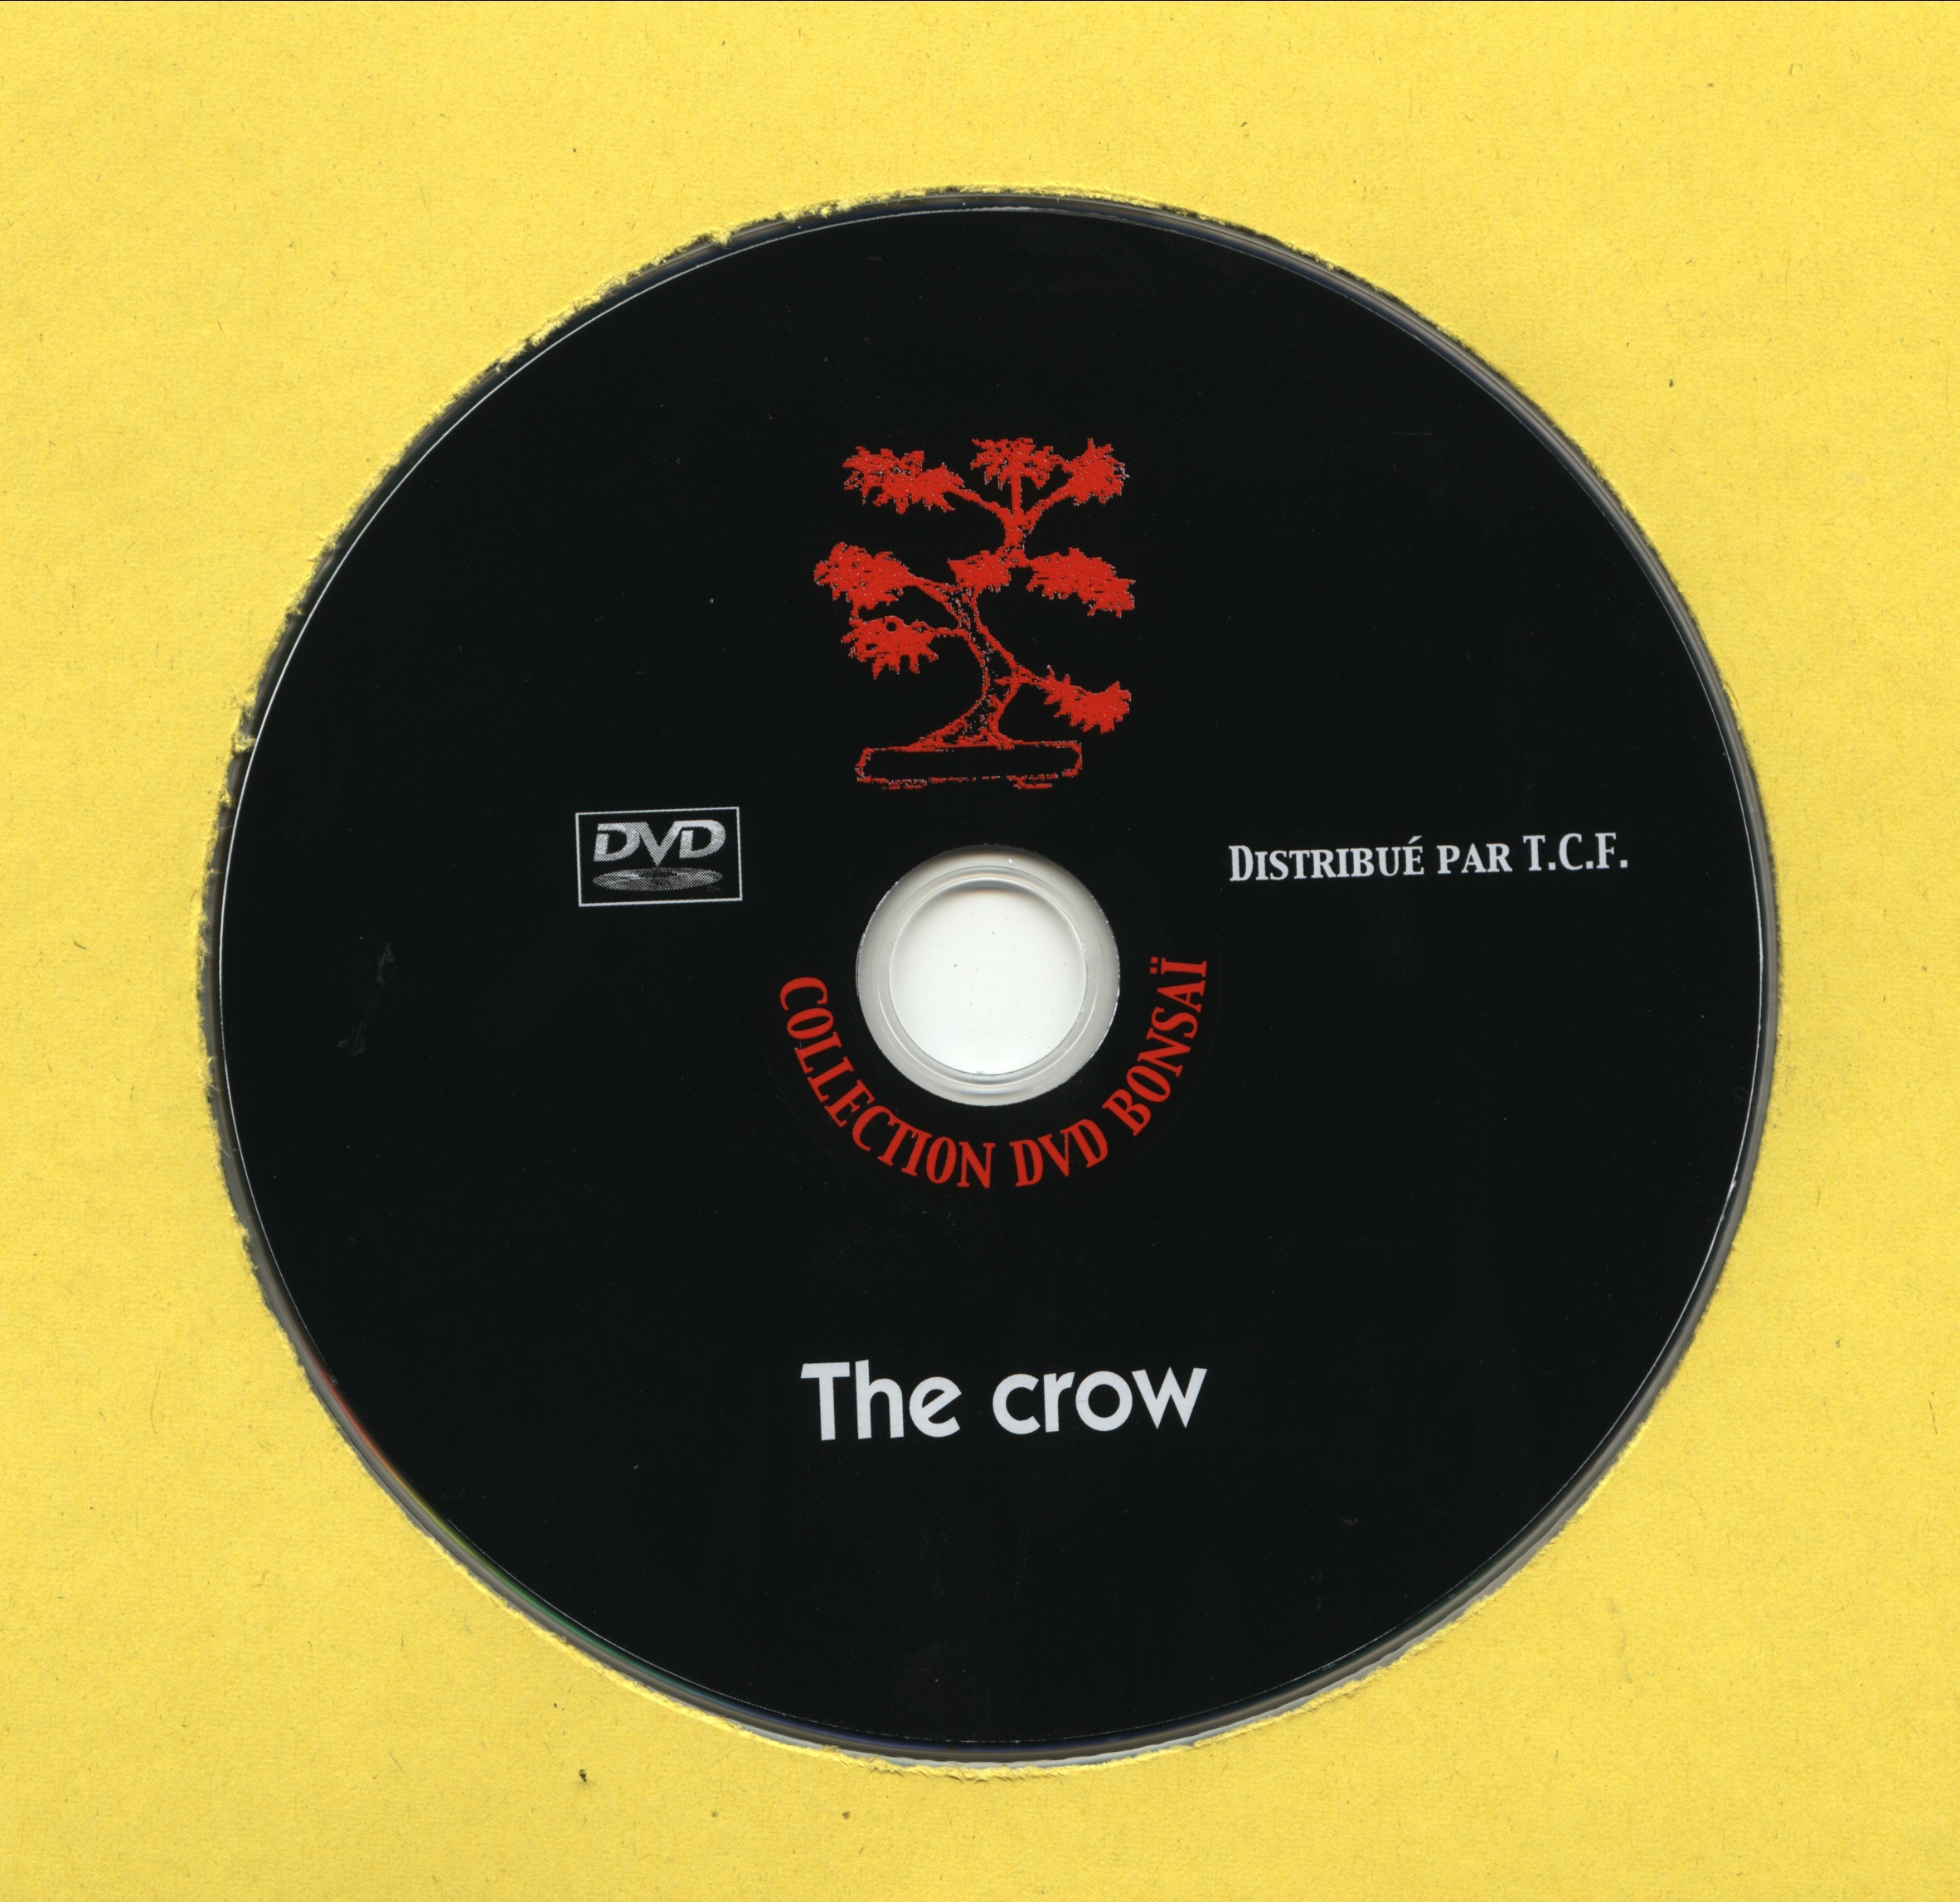 The crow v2